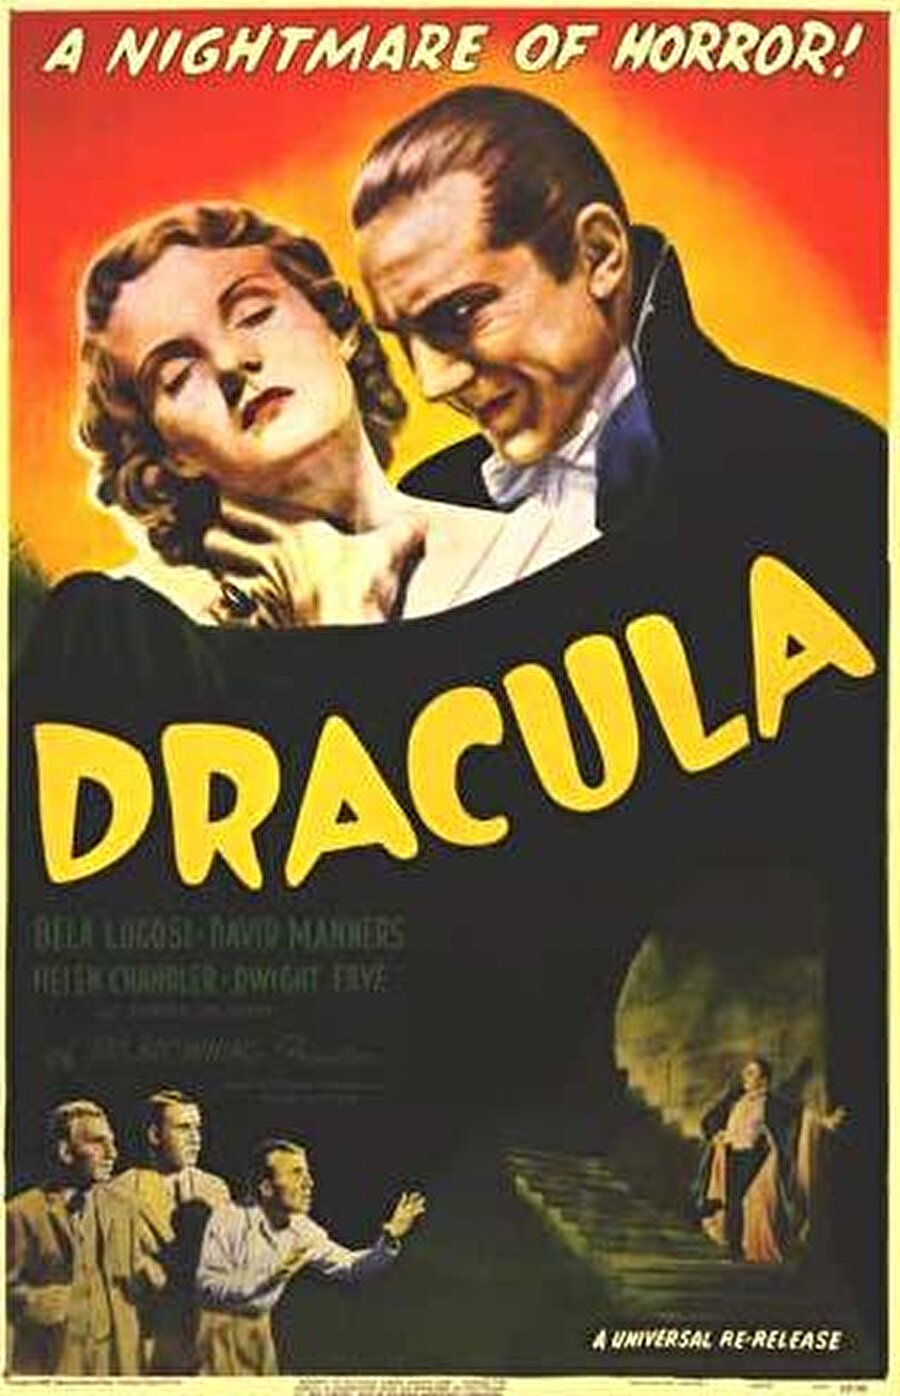 Çatı katında bulunan film afişlerinden servet elde etti
ABD'nin Pennsylvania eyaletinde bir çatı Holywood’un Altın Çağı’ndan kalma film afişleri bulundu. Teksas'ta bulunan bir müzayede evinde yapılan açık artırmada 33 film afişi, 1.9 milyon liraya satıldı. Müzayede evi, açık artırmada en fazla para verilenin 1931 yılından kalma "Dracula" (Drakula) filminin afişi olduğunu, bu afişin 143 bin 400 dolara satıldığını açıkladı.